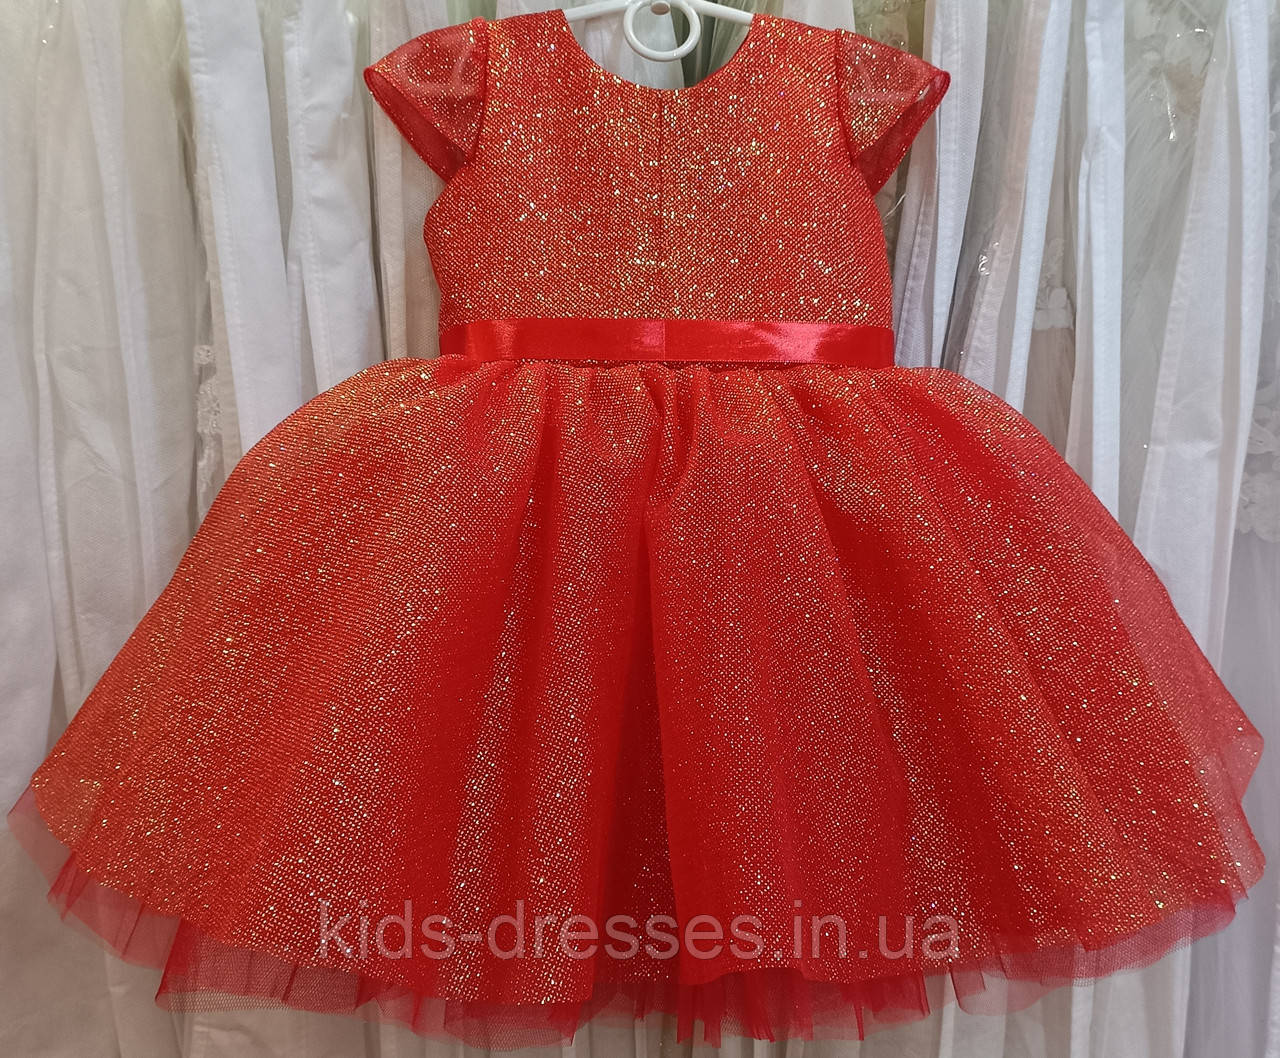 Блискуча червона ошатна дитяча сукня з коротким рукавчиком на 1-2 рочки